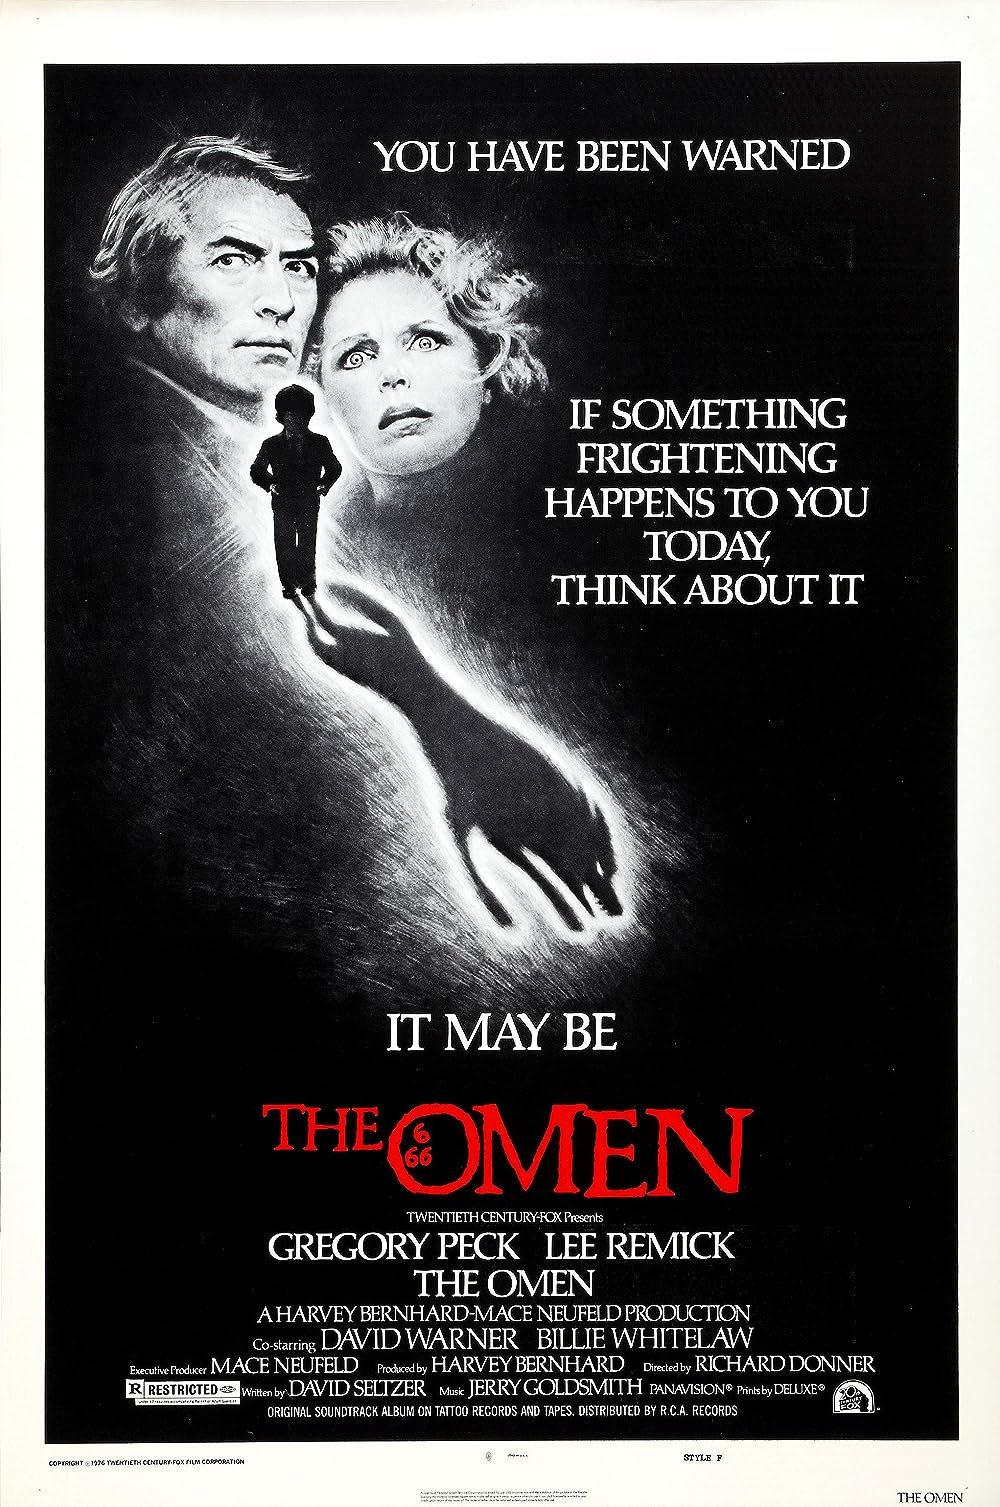 18) The Omen (1976) - IMDb: 7.5